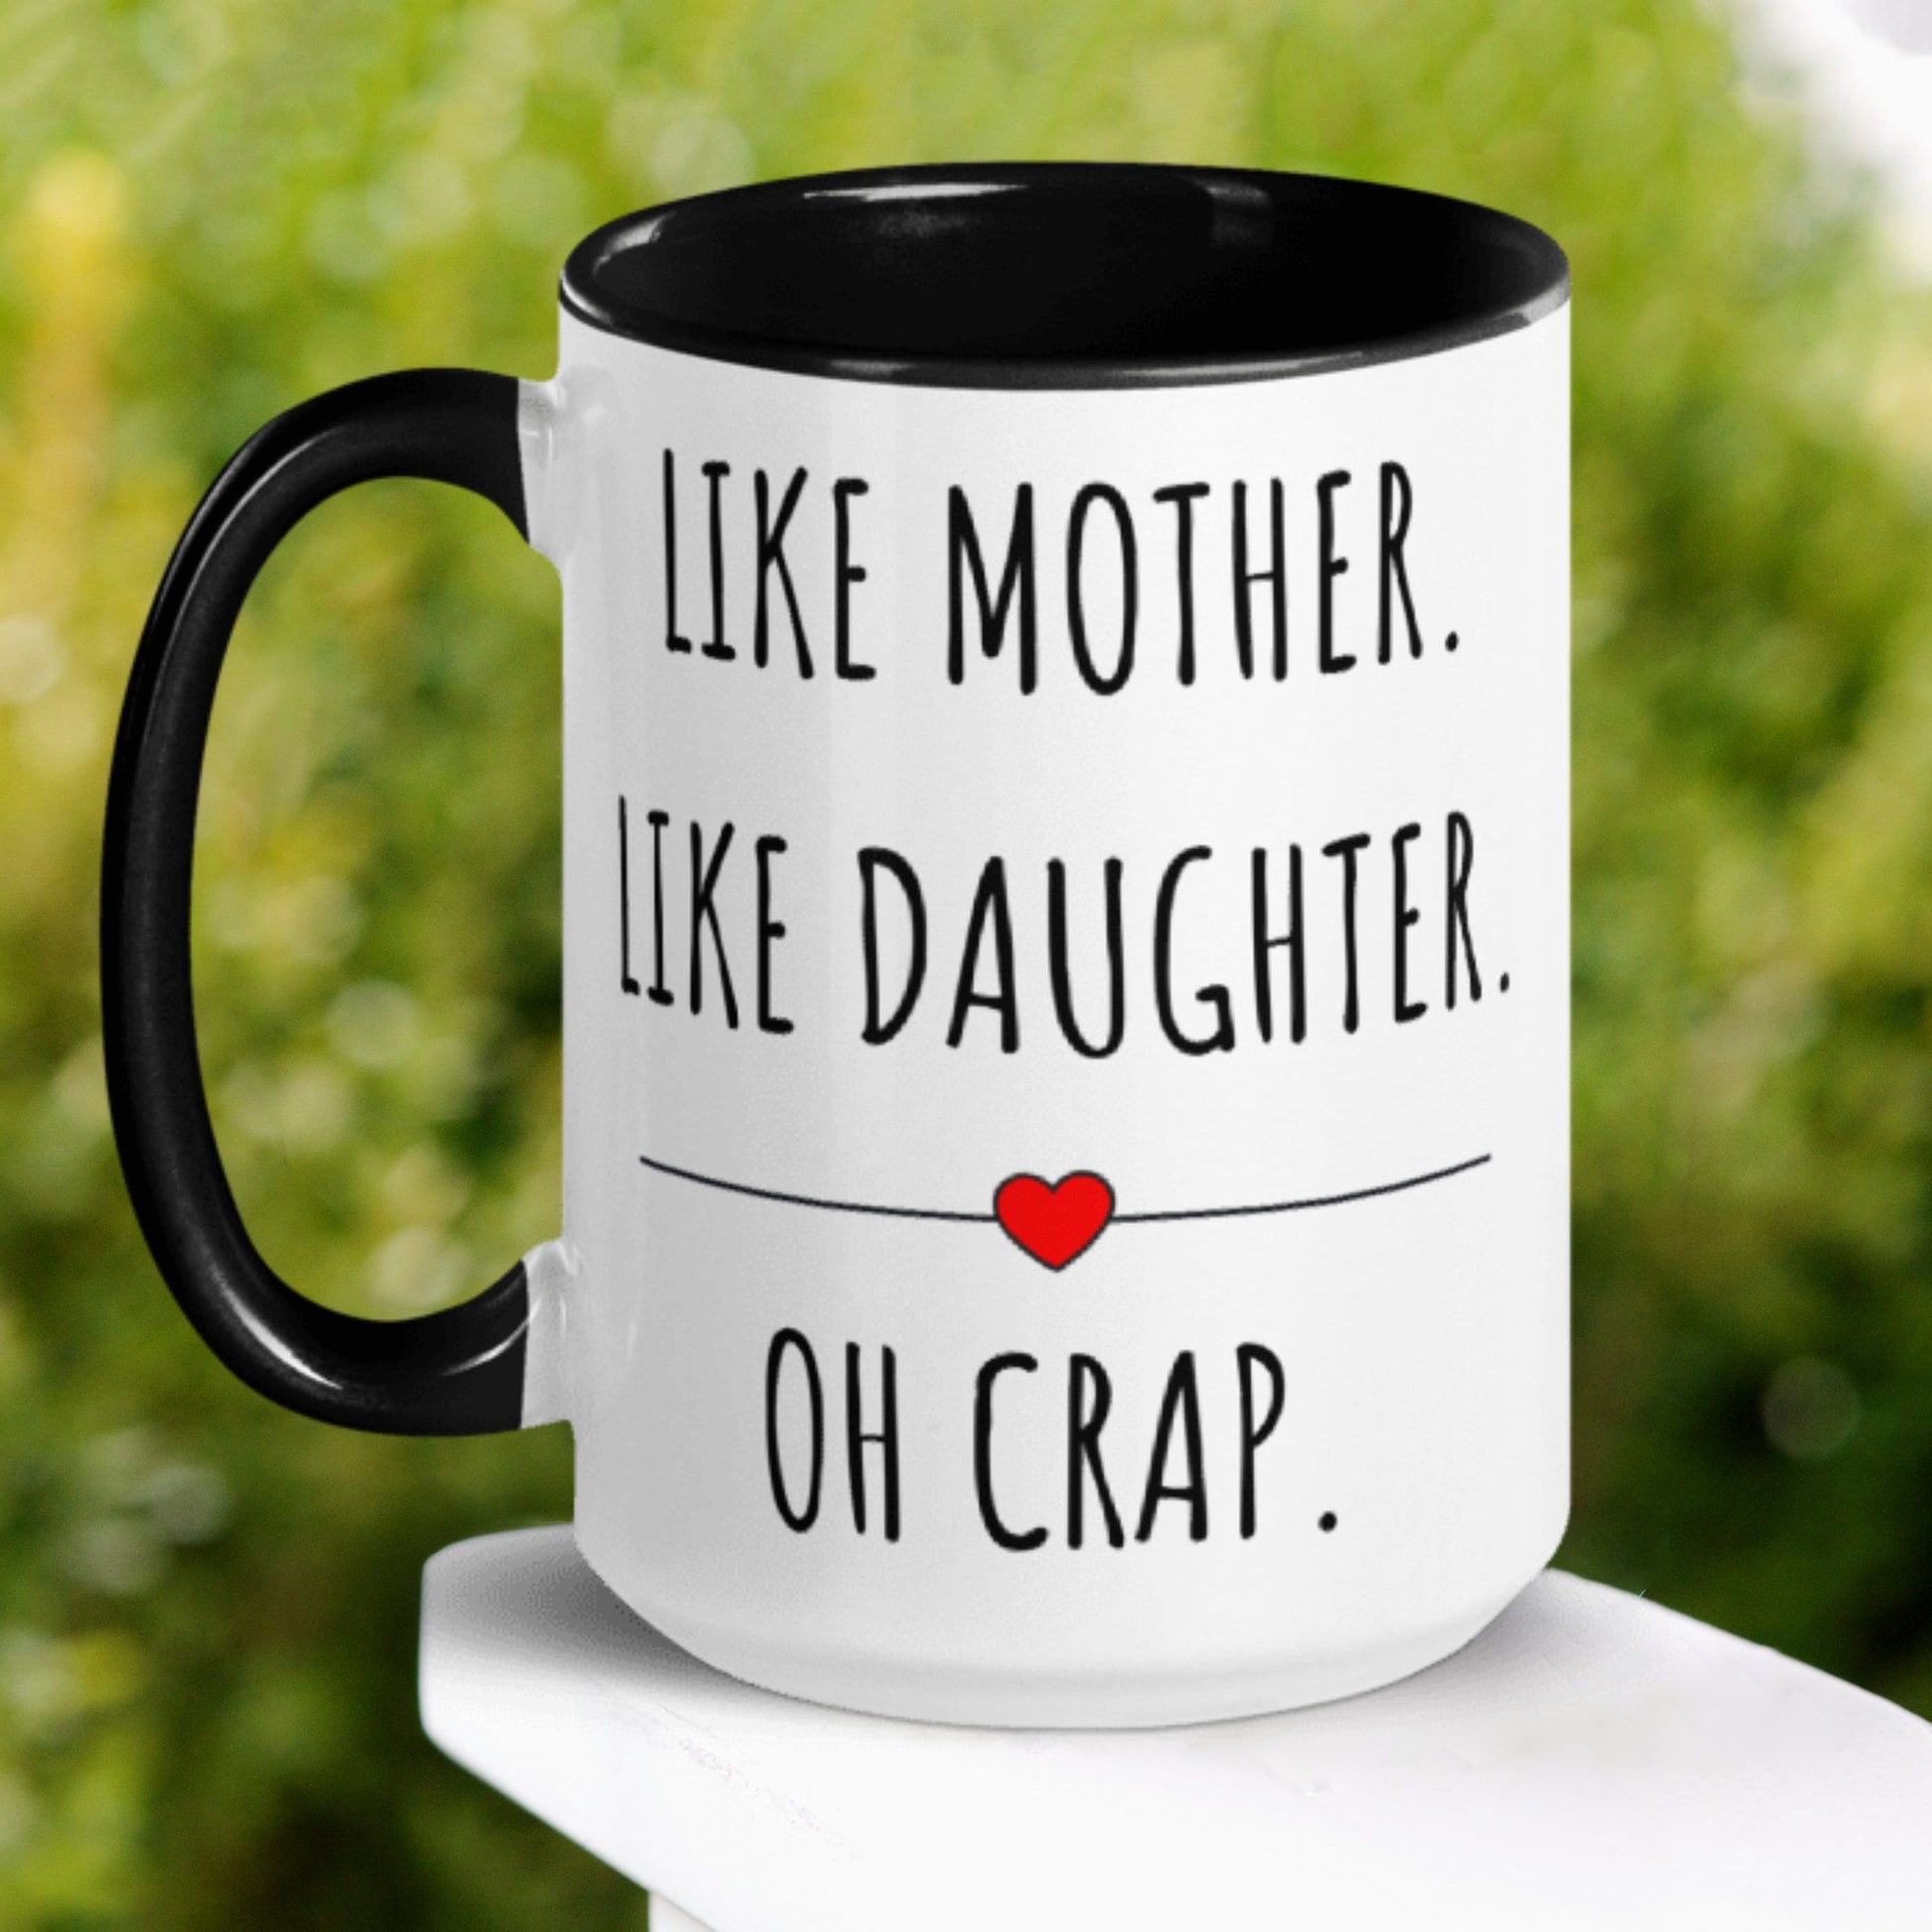 Like Mother Like Daughter Mug, Oh Crap Mug - Zehnaria - FAMILY & FRIENDS - Mugs